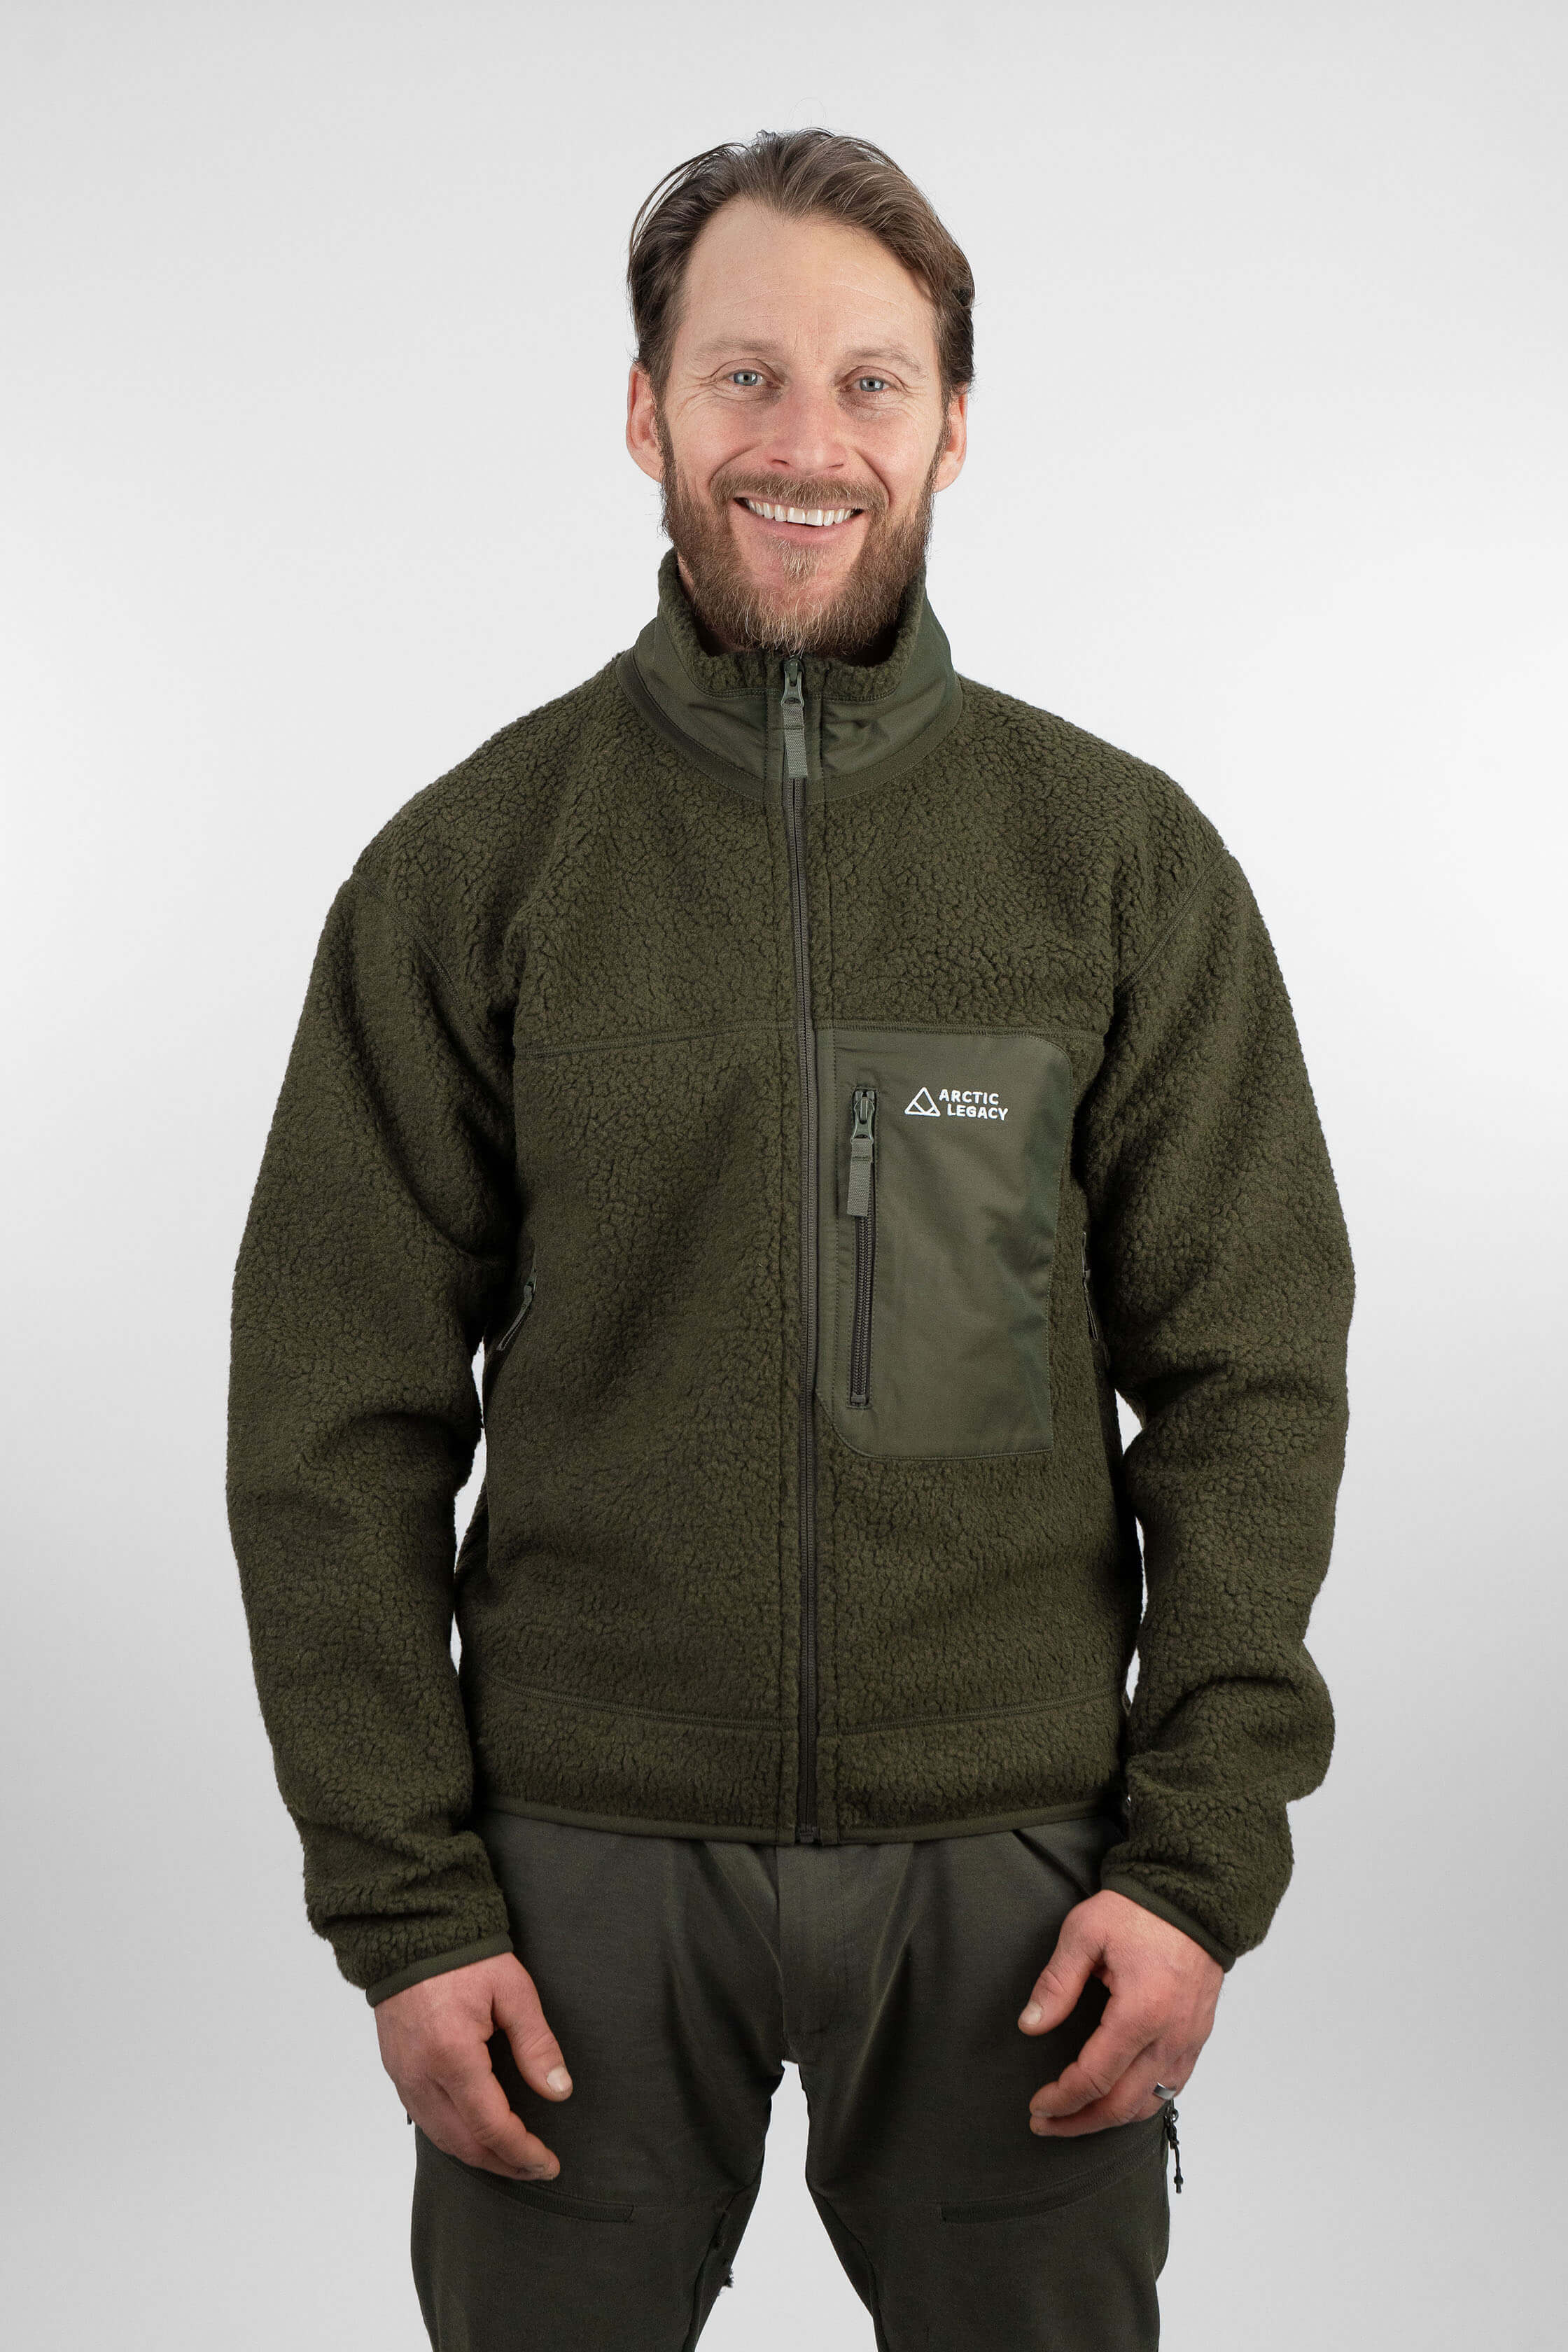 Gerry Terra Printed High Pile Fleece Jacket - Full Zip - Save 64%